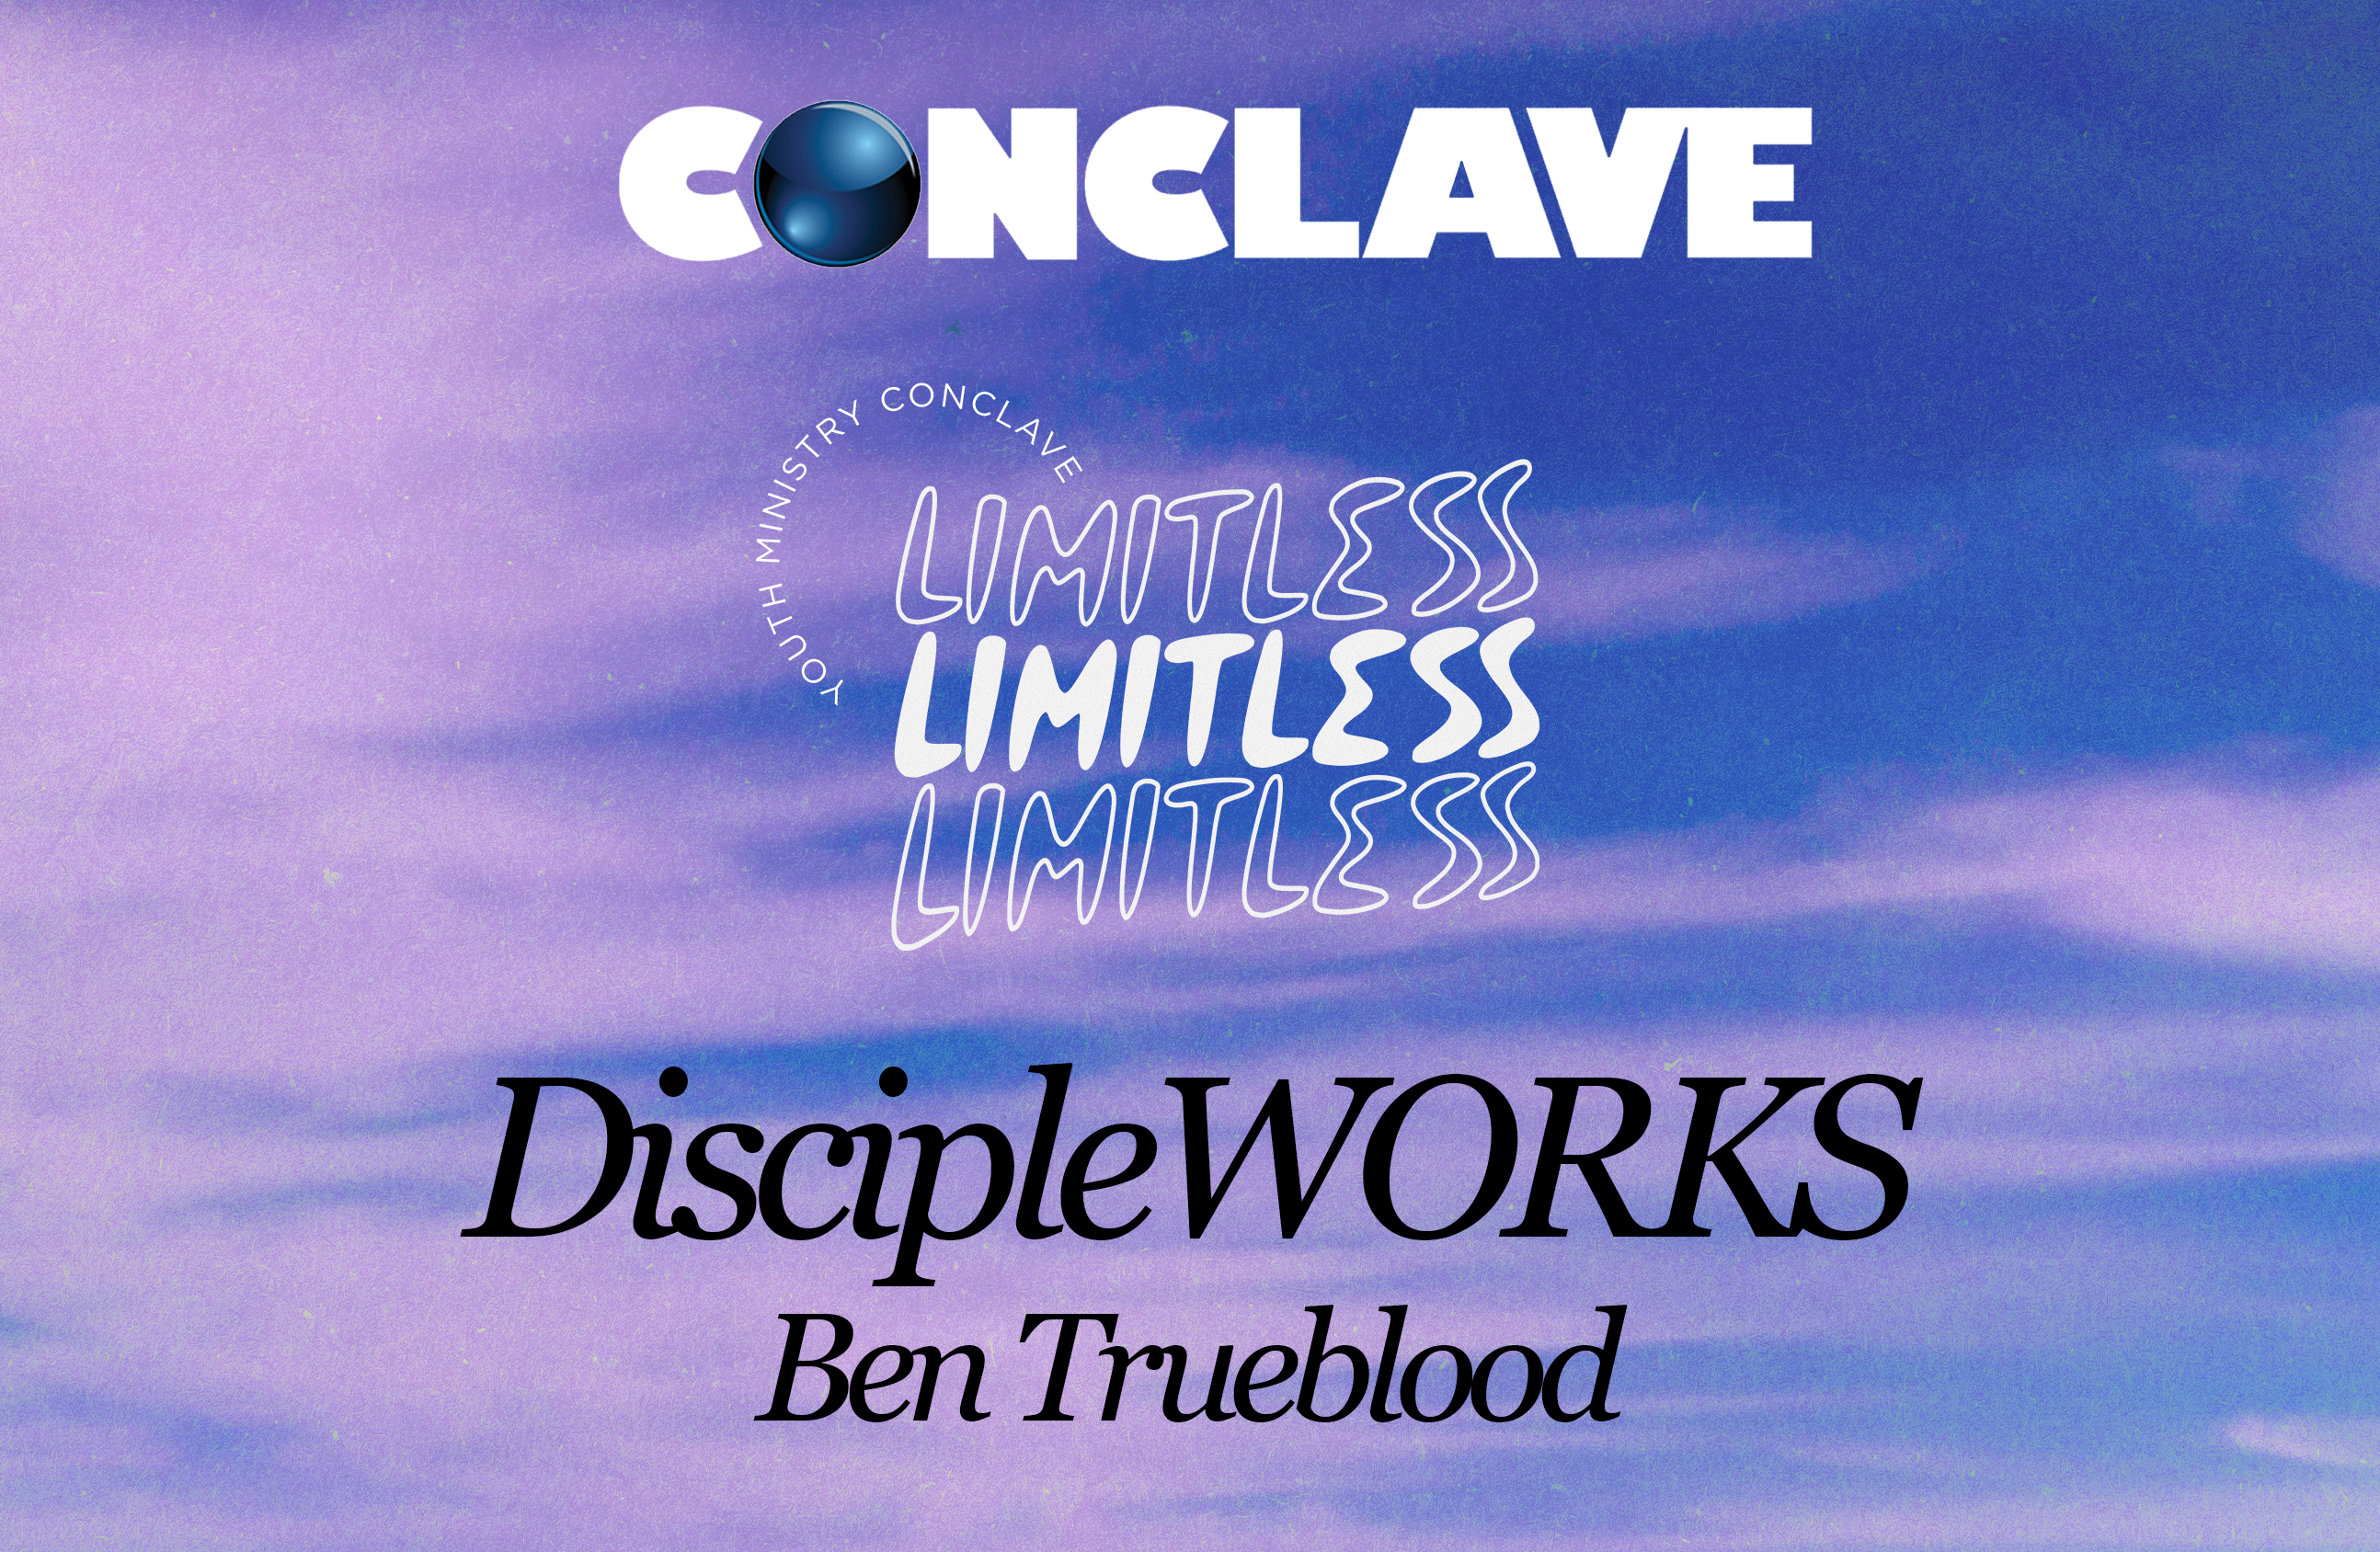 DiscipleWORKS